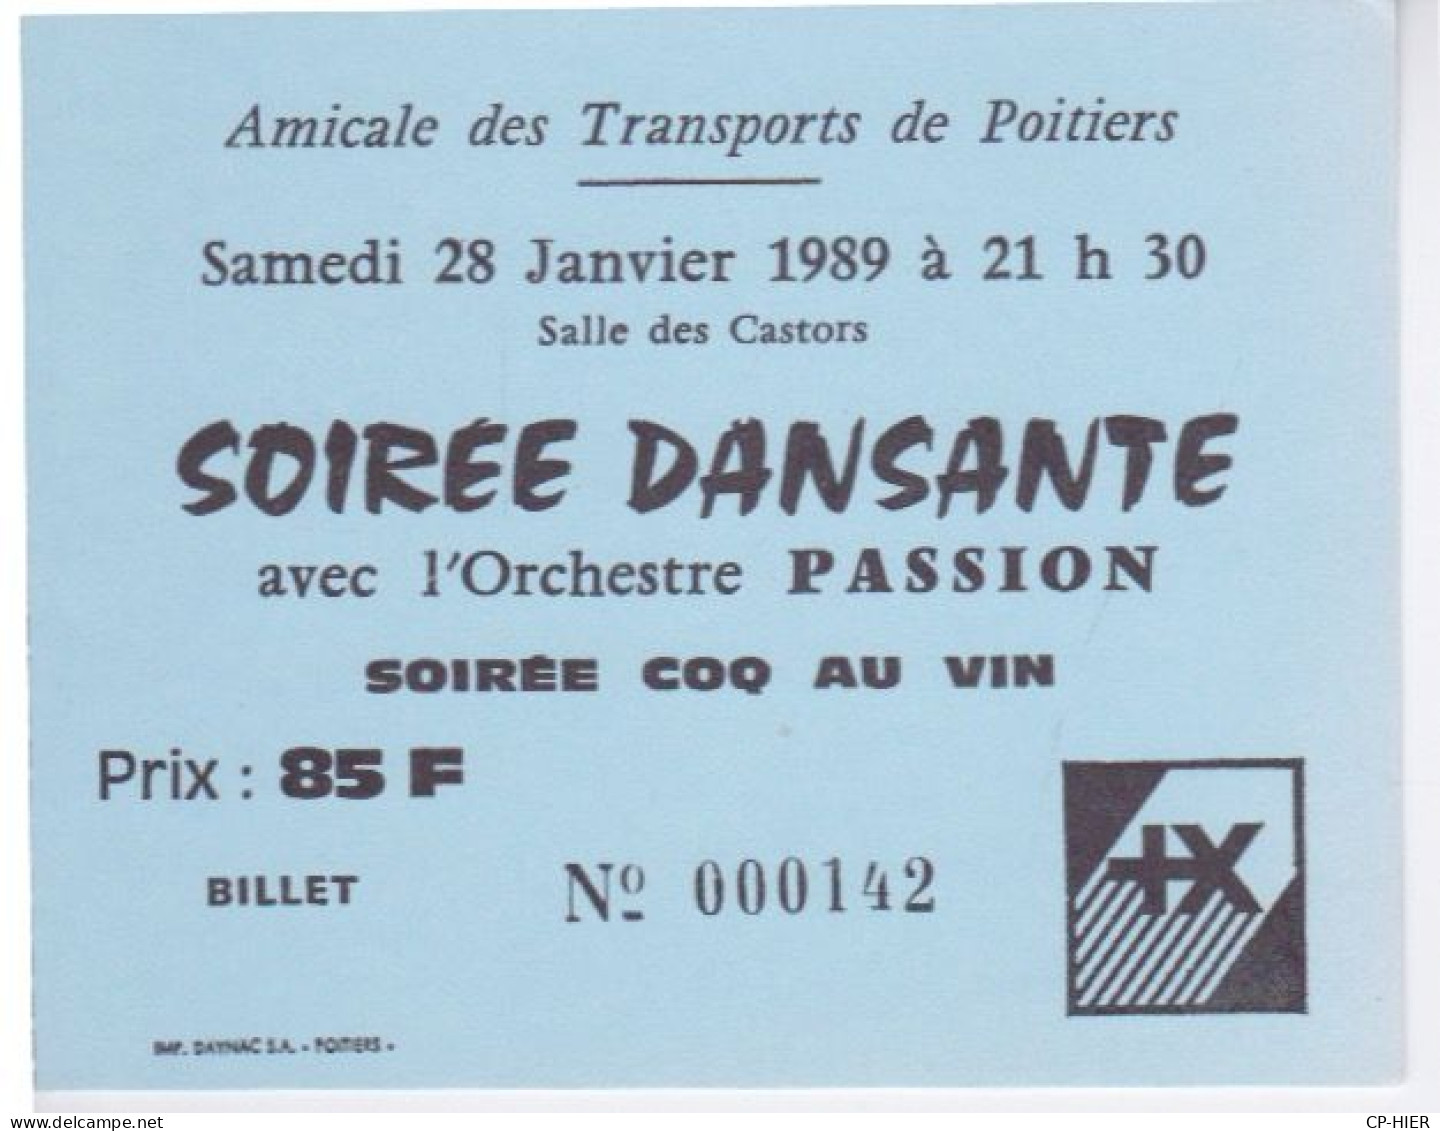 86 - POITIERS - AMICALE DES TRANSPORTS - SOIREE DANSANTE  -  ORCHESTRE PASSION - SOIREE COQ AU VIN SALLE CASTORS - Tickets D'entrée